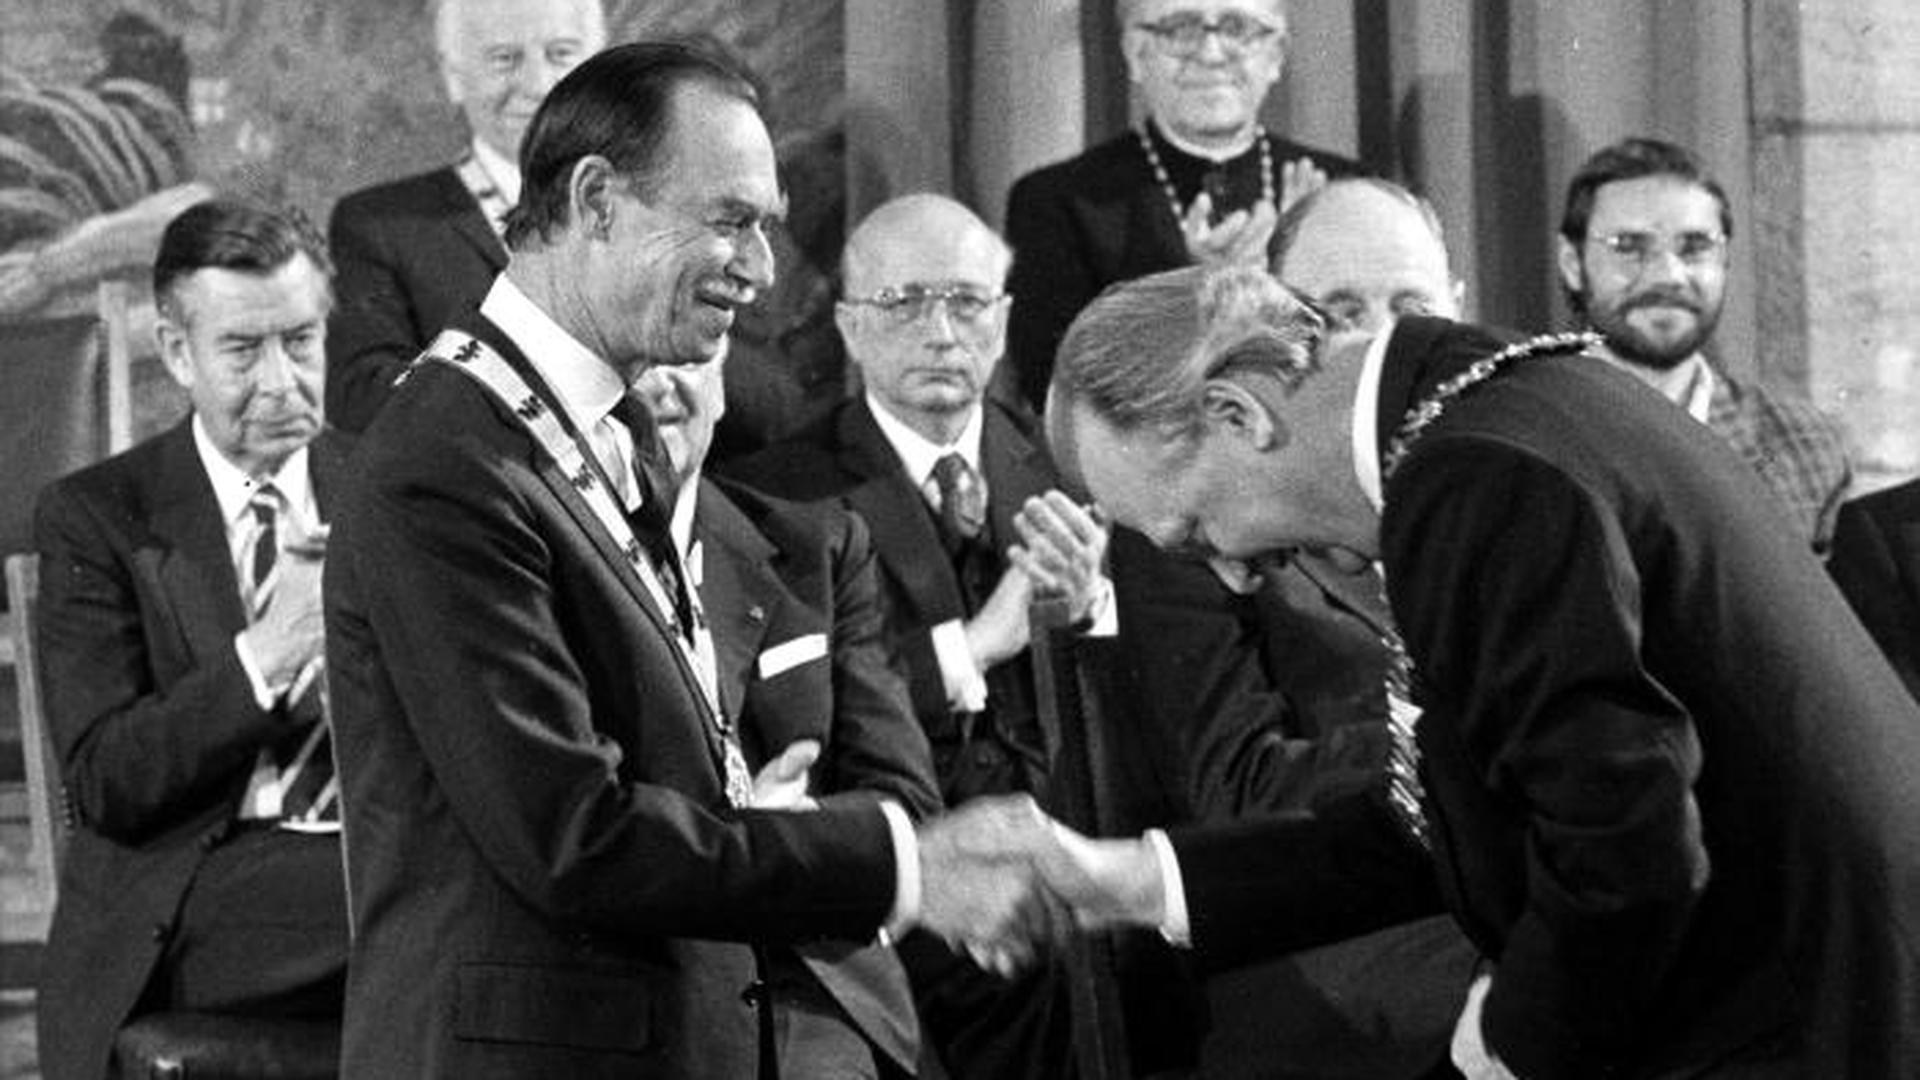 Le 8 mai 1986, le grand-duc Jean, en tant que représentant du peuple luxembourgeois, reçoit le prix Charlemagne